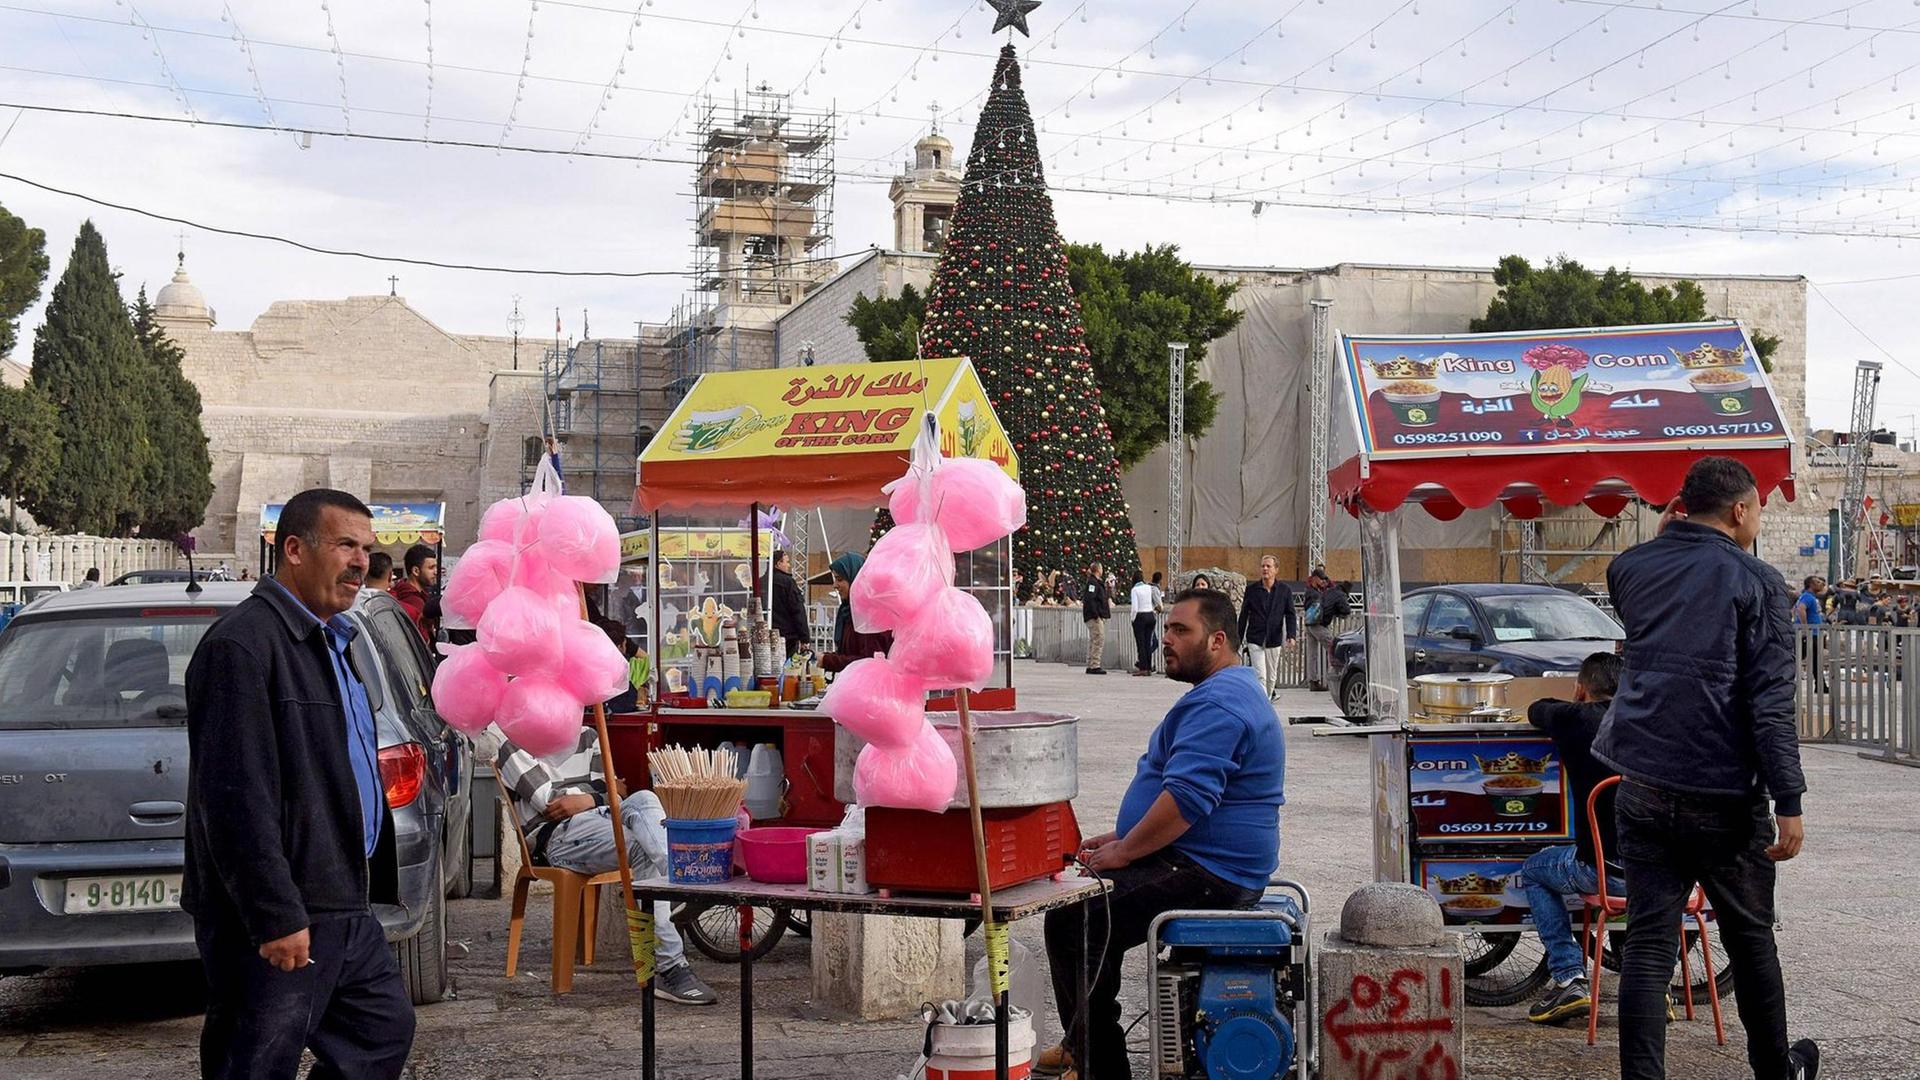 Palästinensische Händler warten mit ihren Imbissständen am 12.12.2017 auf dem Manger-Platz in Bethlehem, Westjordanland, auf Kundschaft (im Hintergrund die Geburtskirche und der traditionelle Weihnachtsbaum).